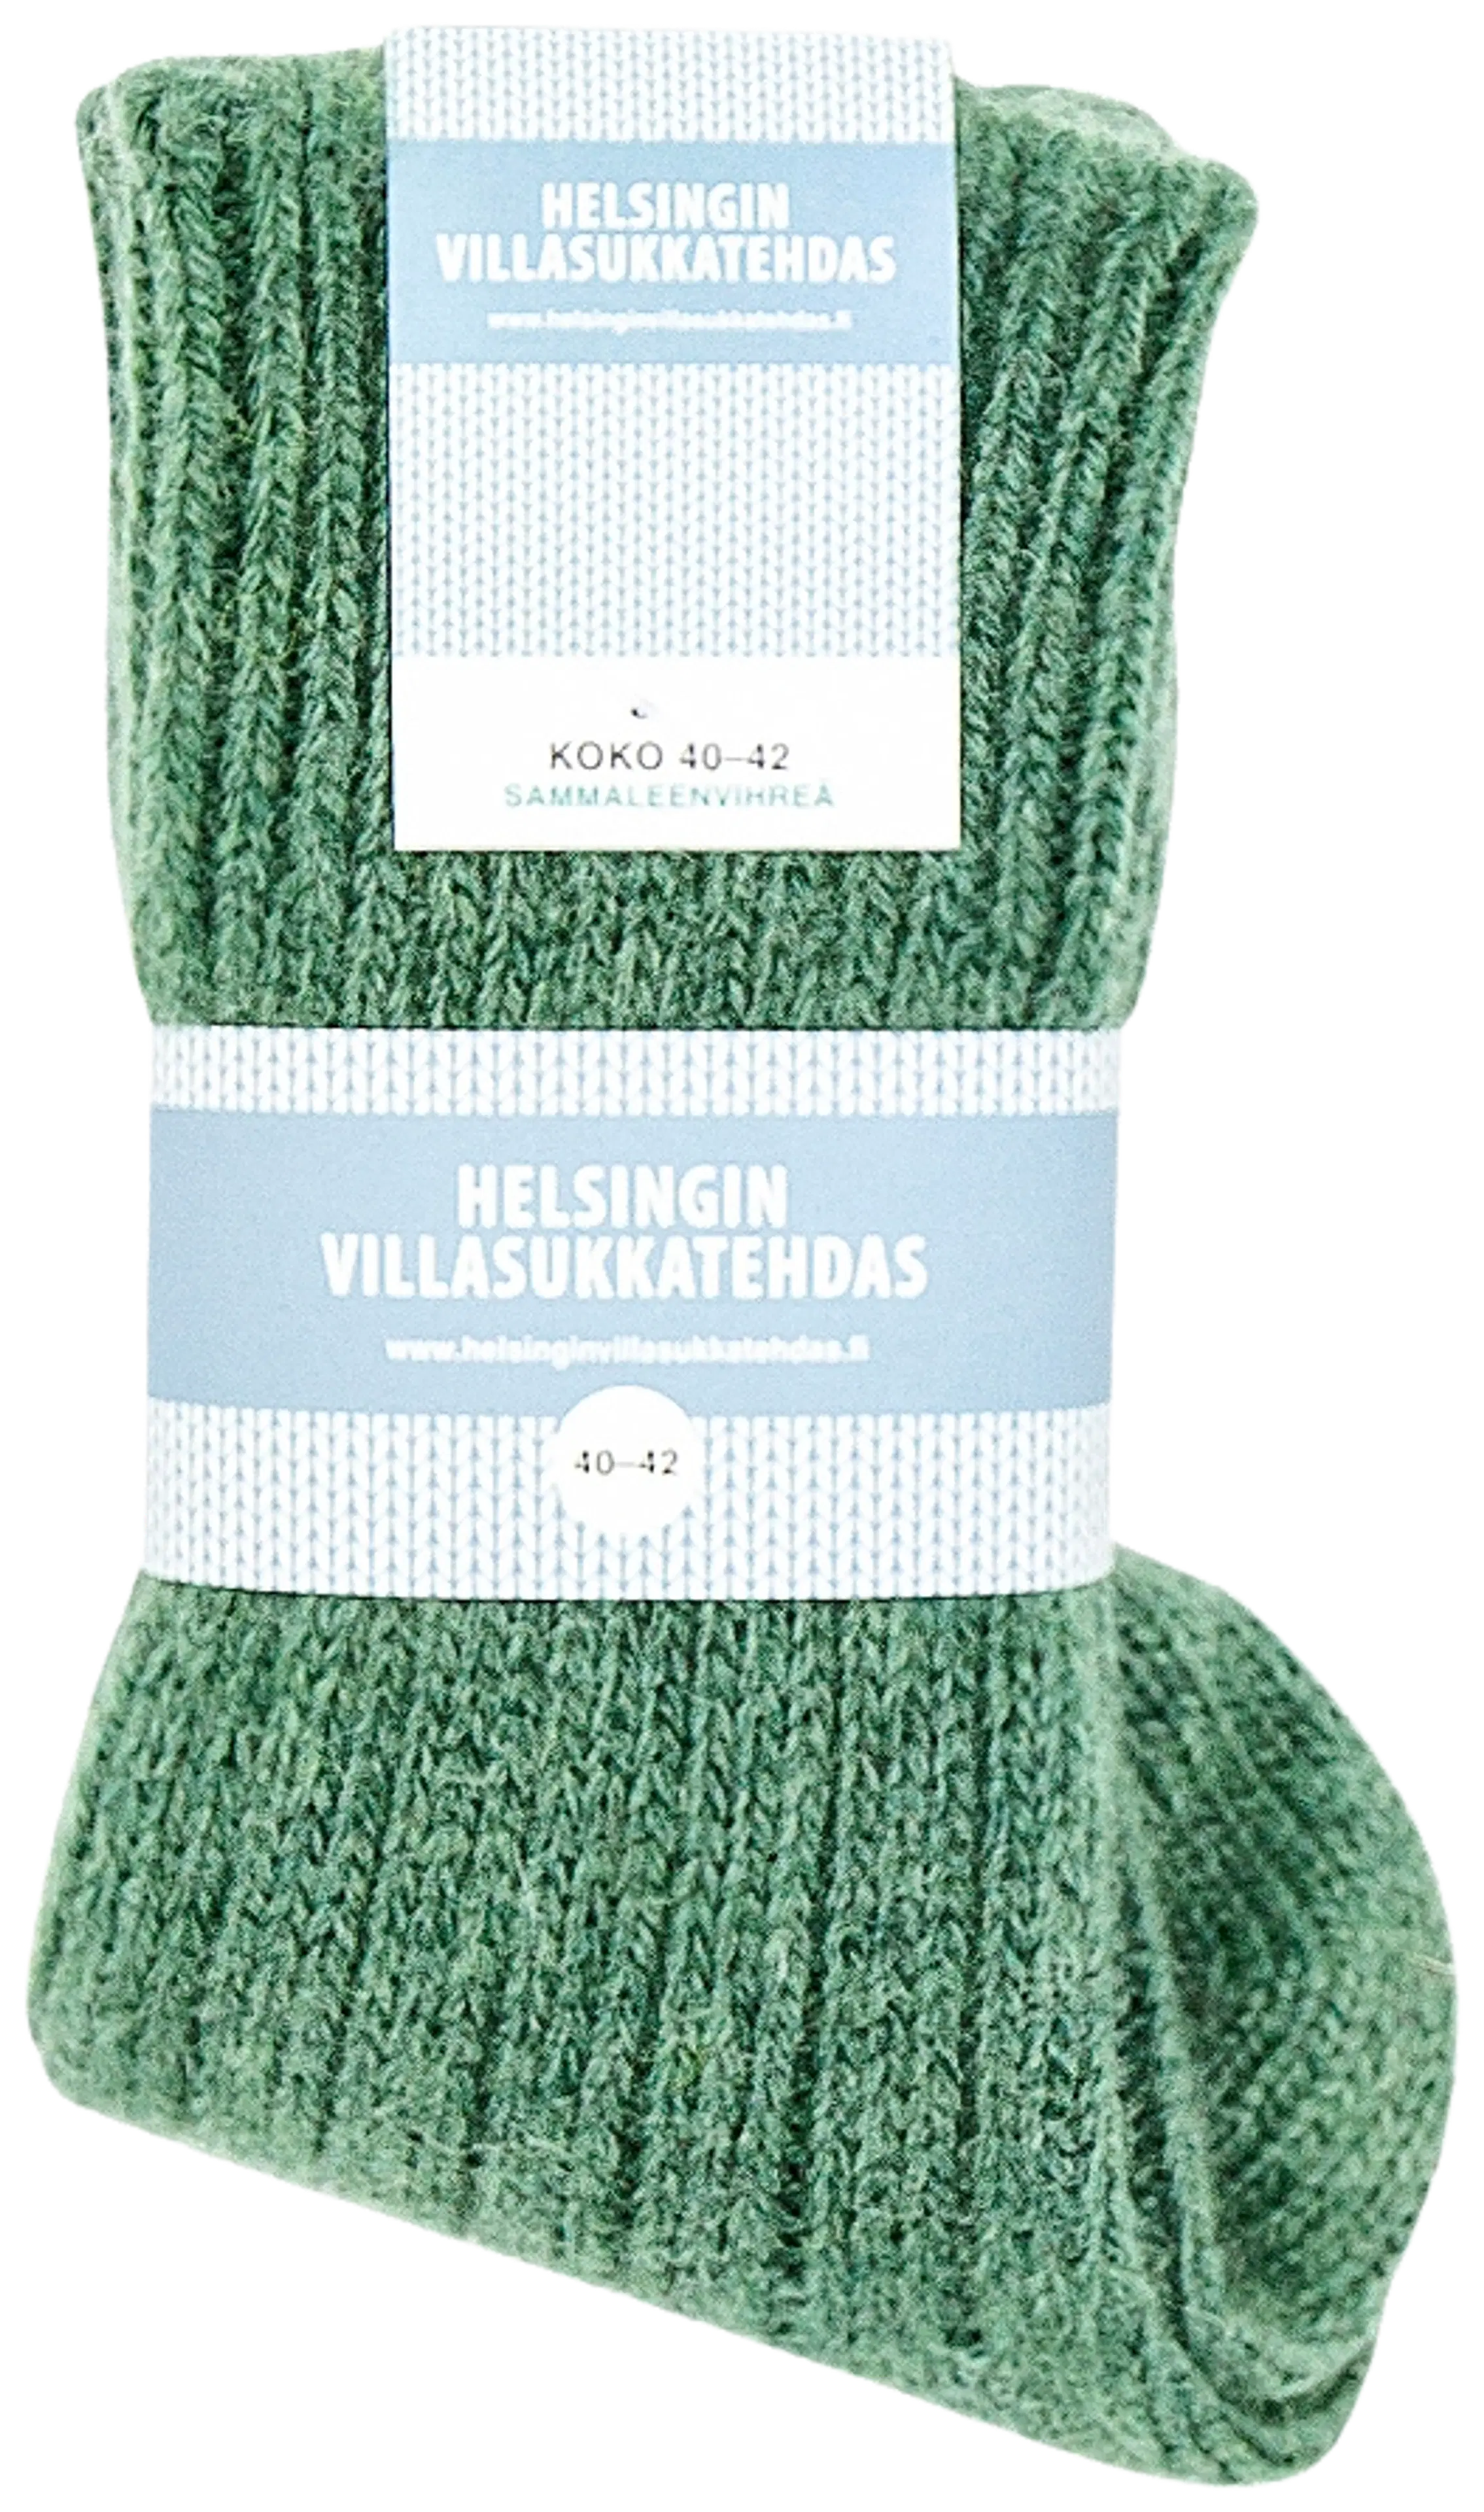 Helsingin villasukkatehdas kotimaiset villasukat